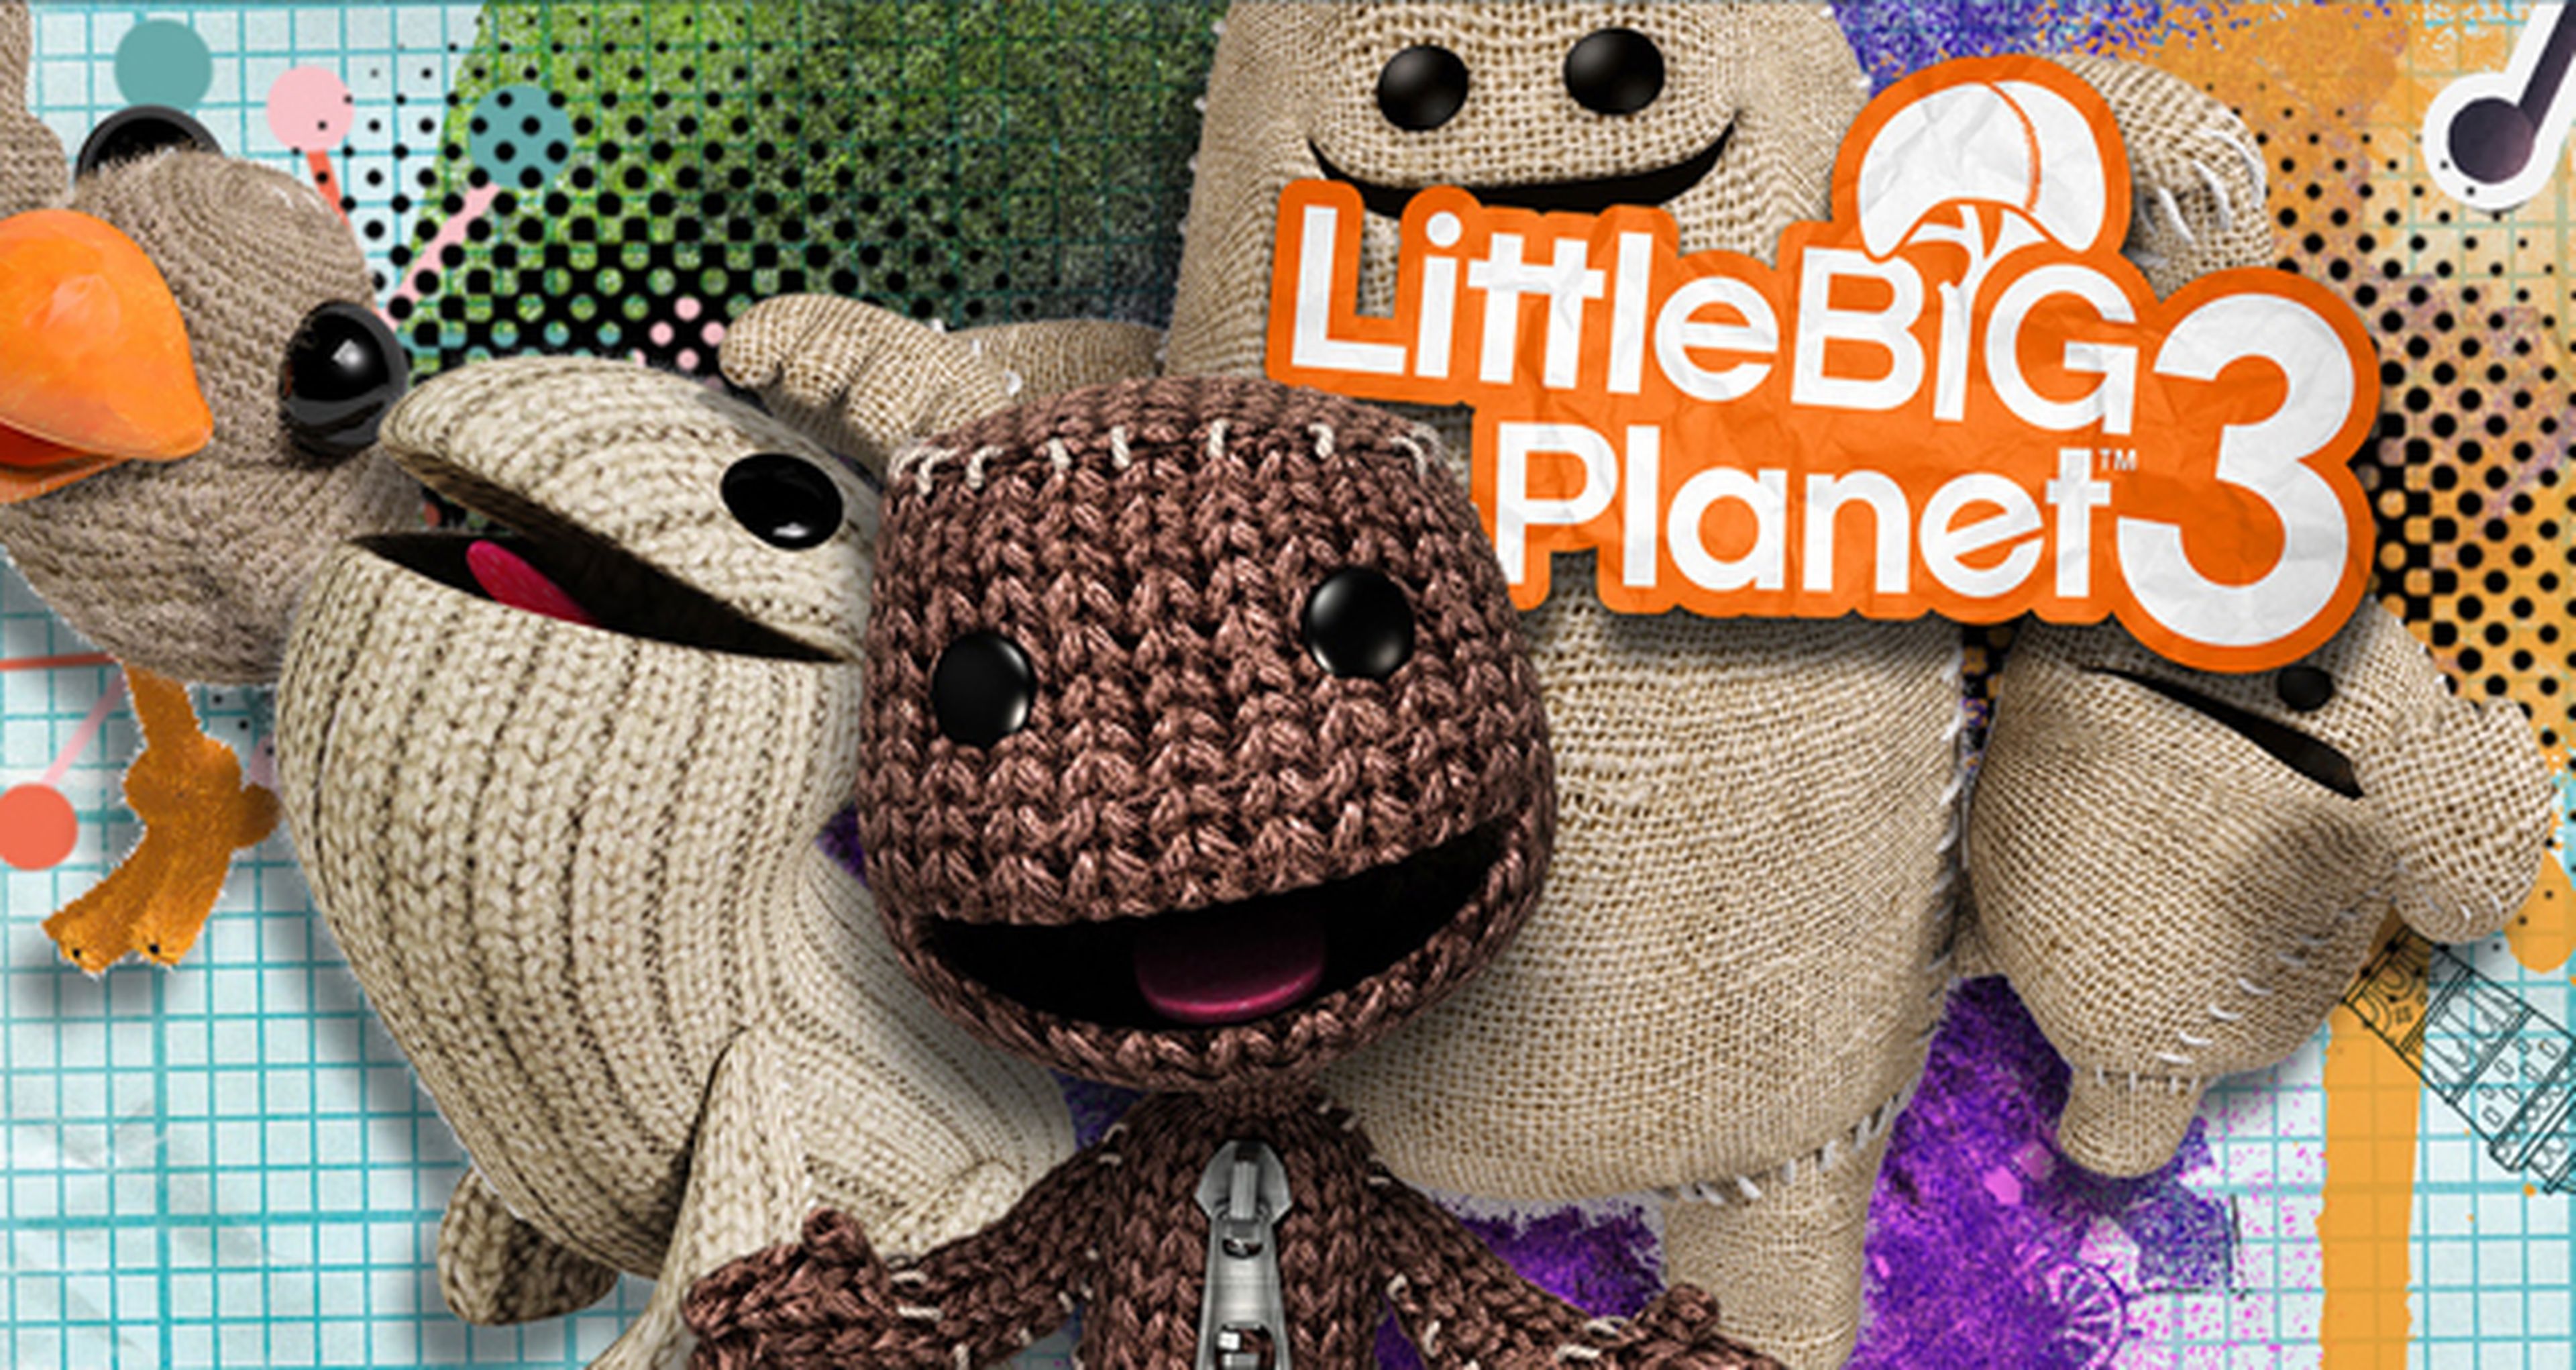 LittleBigPlanet 3 sufre un ligero retraso en su lanzamiento